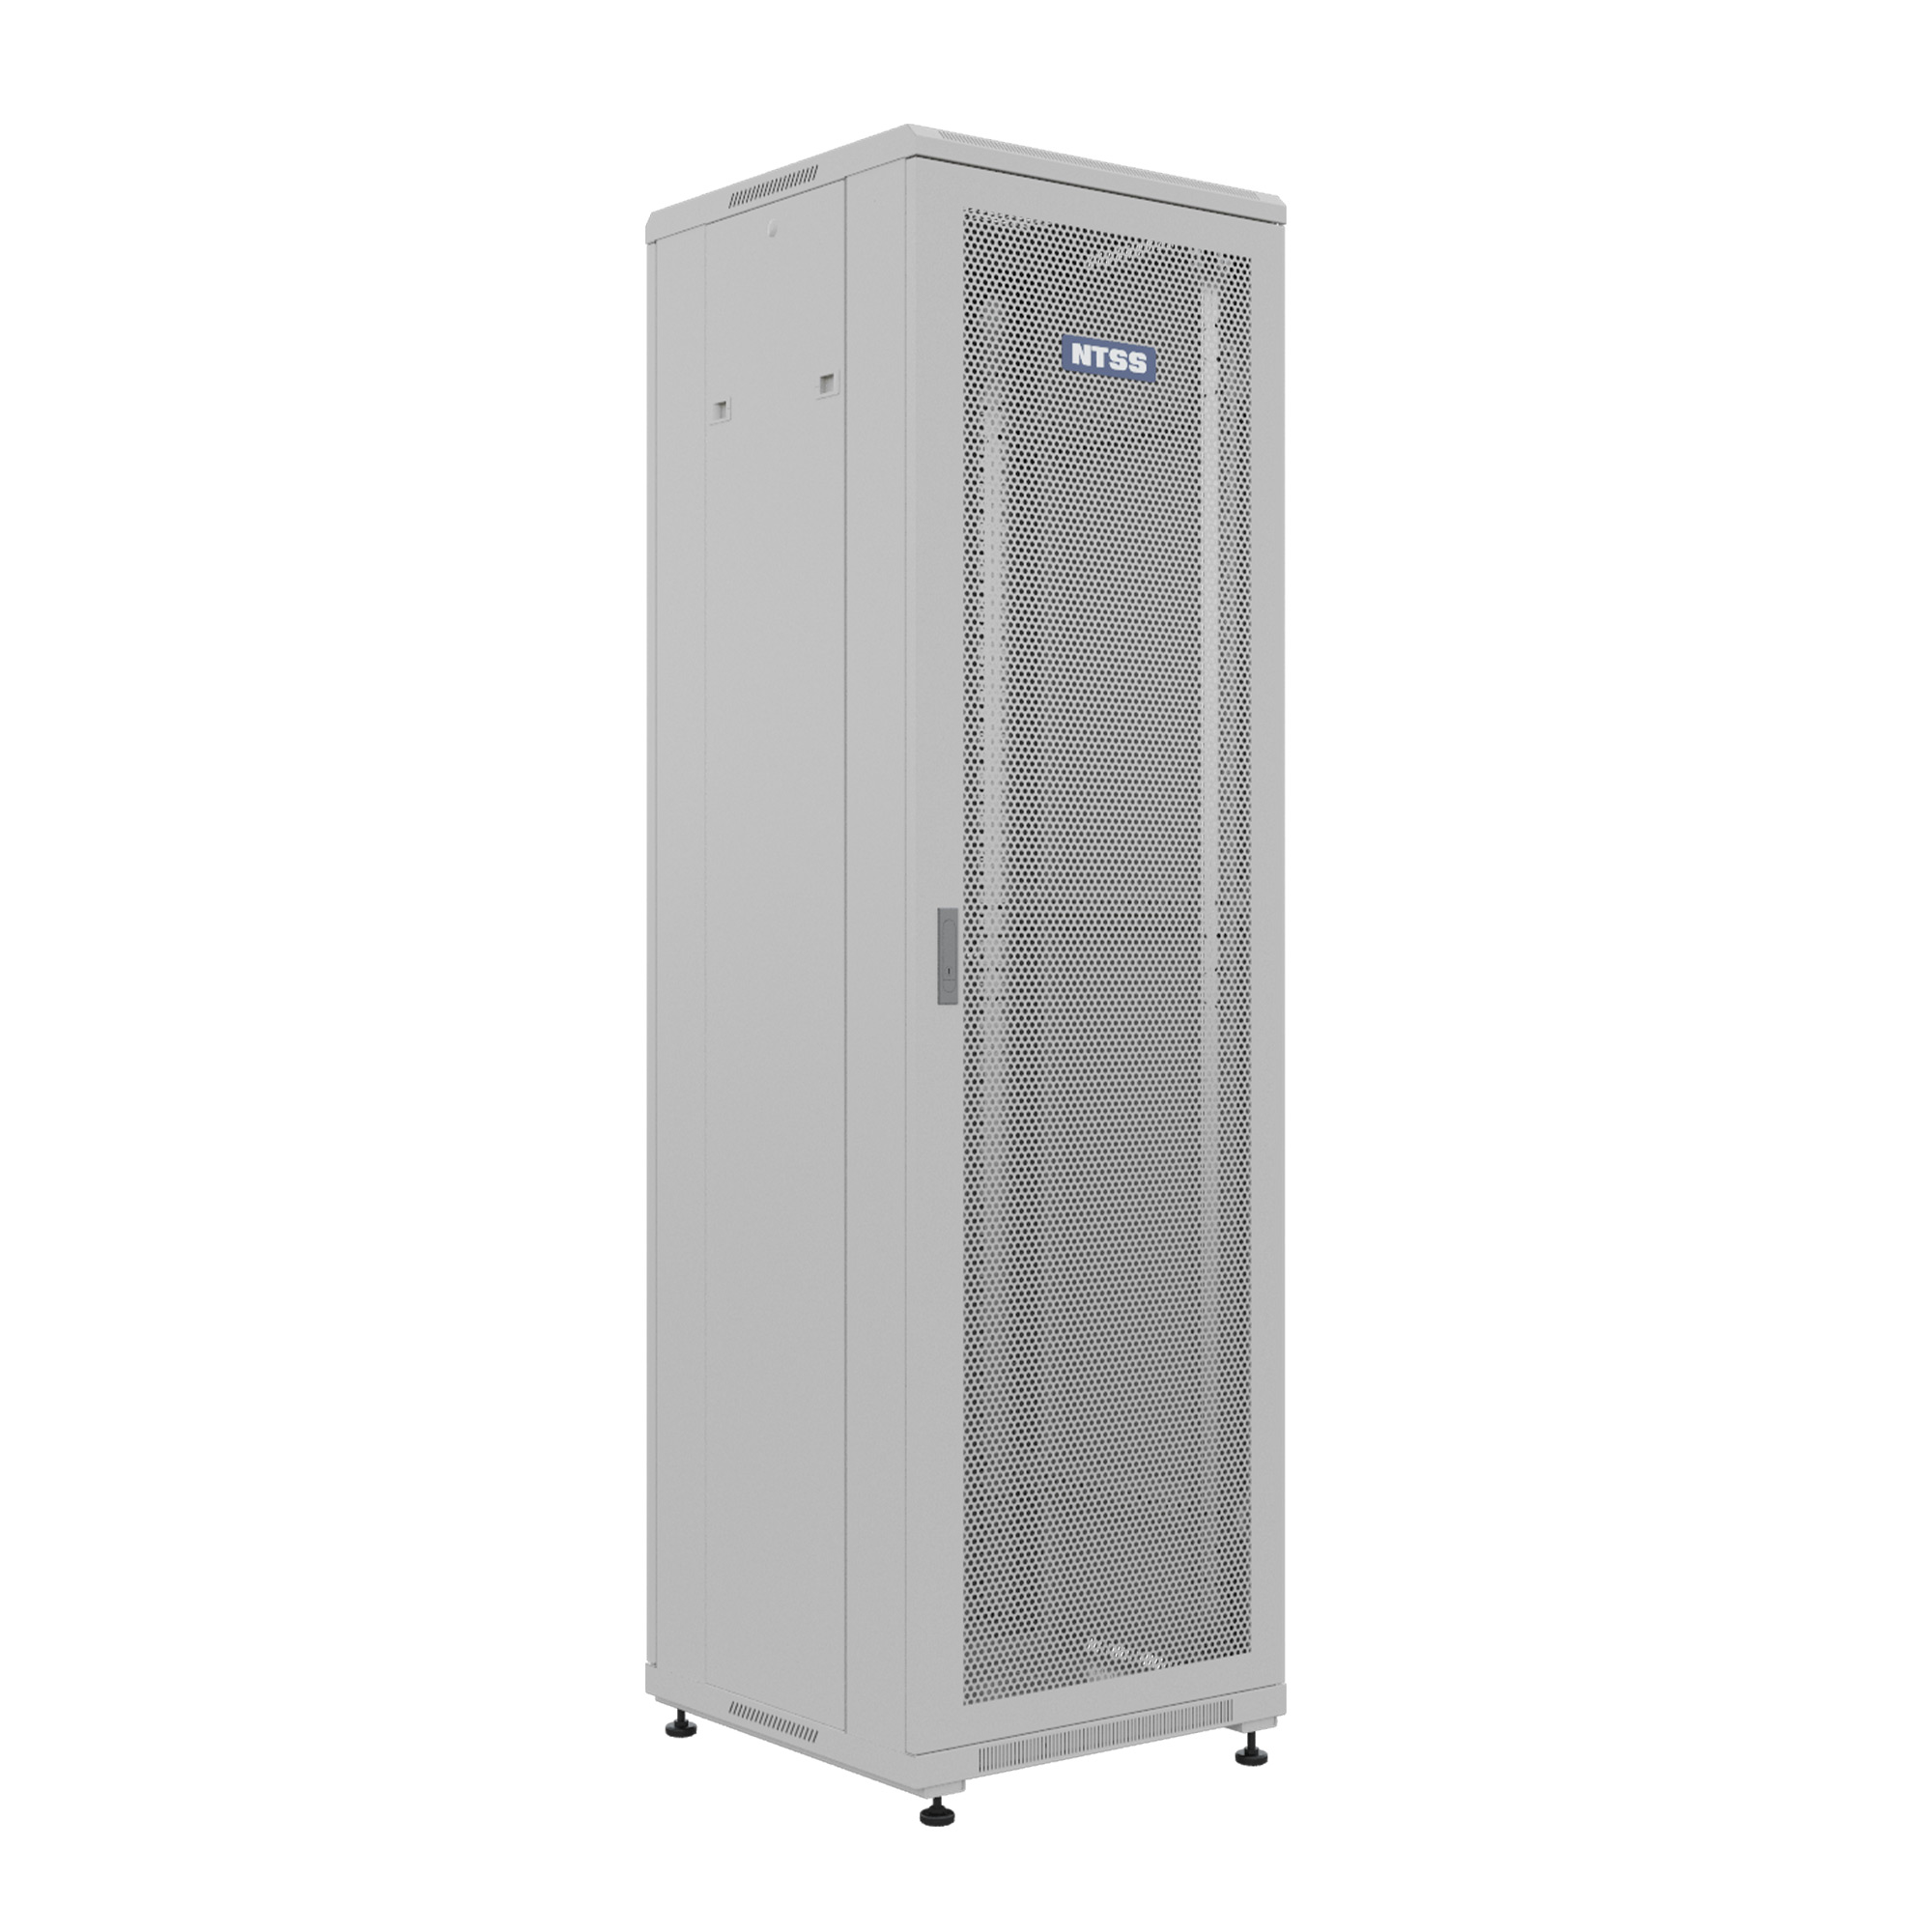 Шкаф напольный универсальный серверный NTSS R 22U 600х600мм, 4 профиля 19, двери перфорированная и сплошная металл, боковые стенки съемные, регулируемые опоры, разобранный, серый RAL 7035